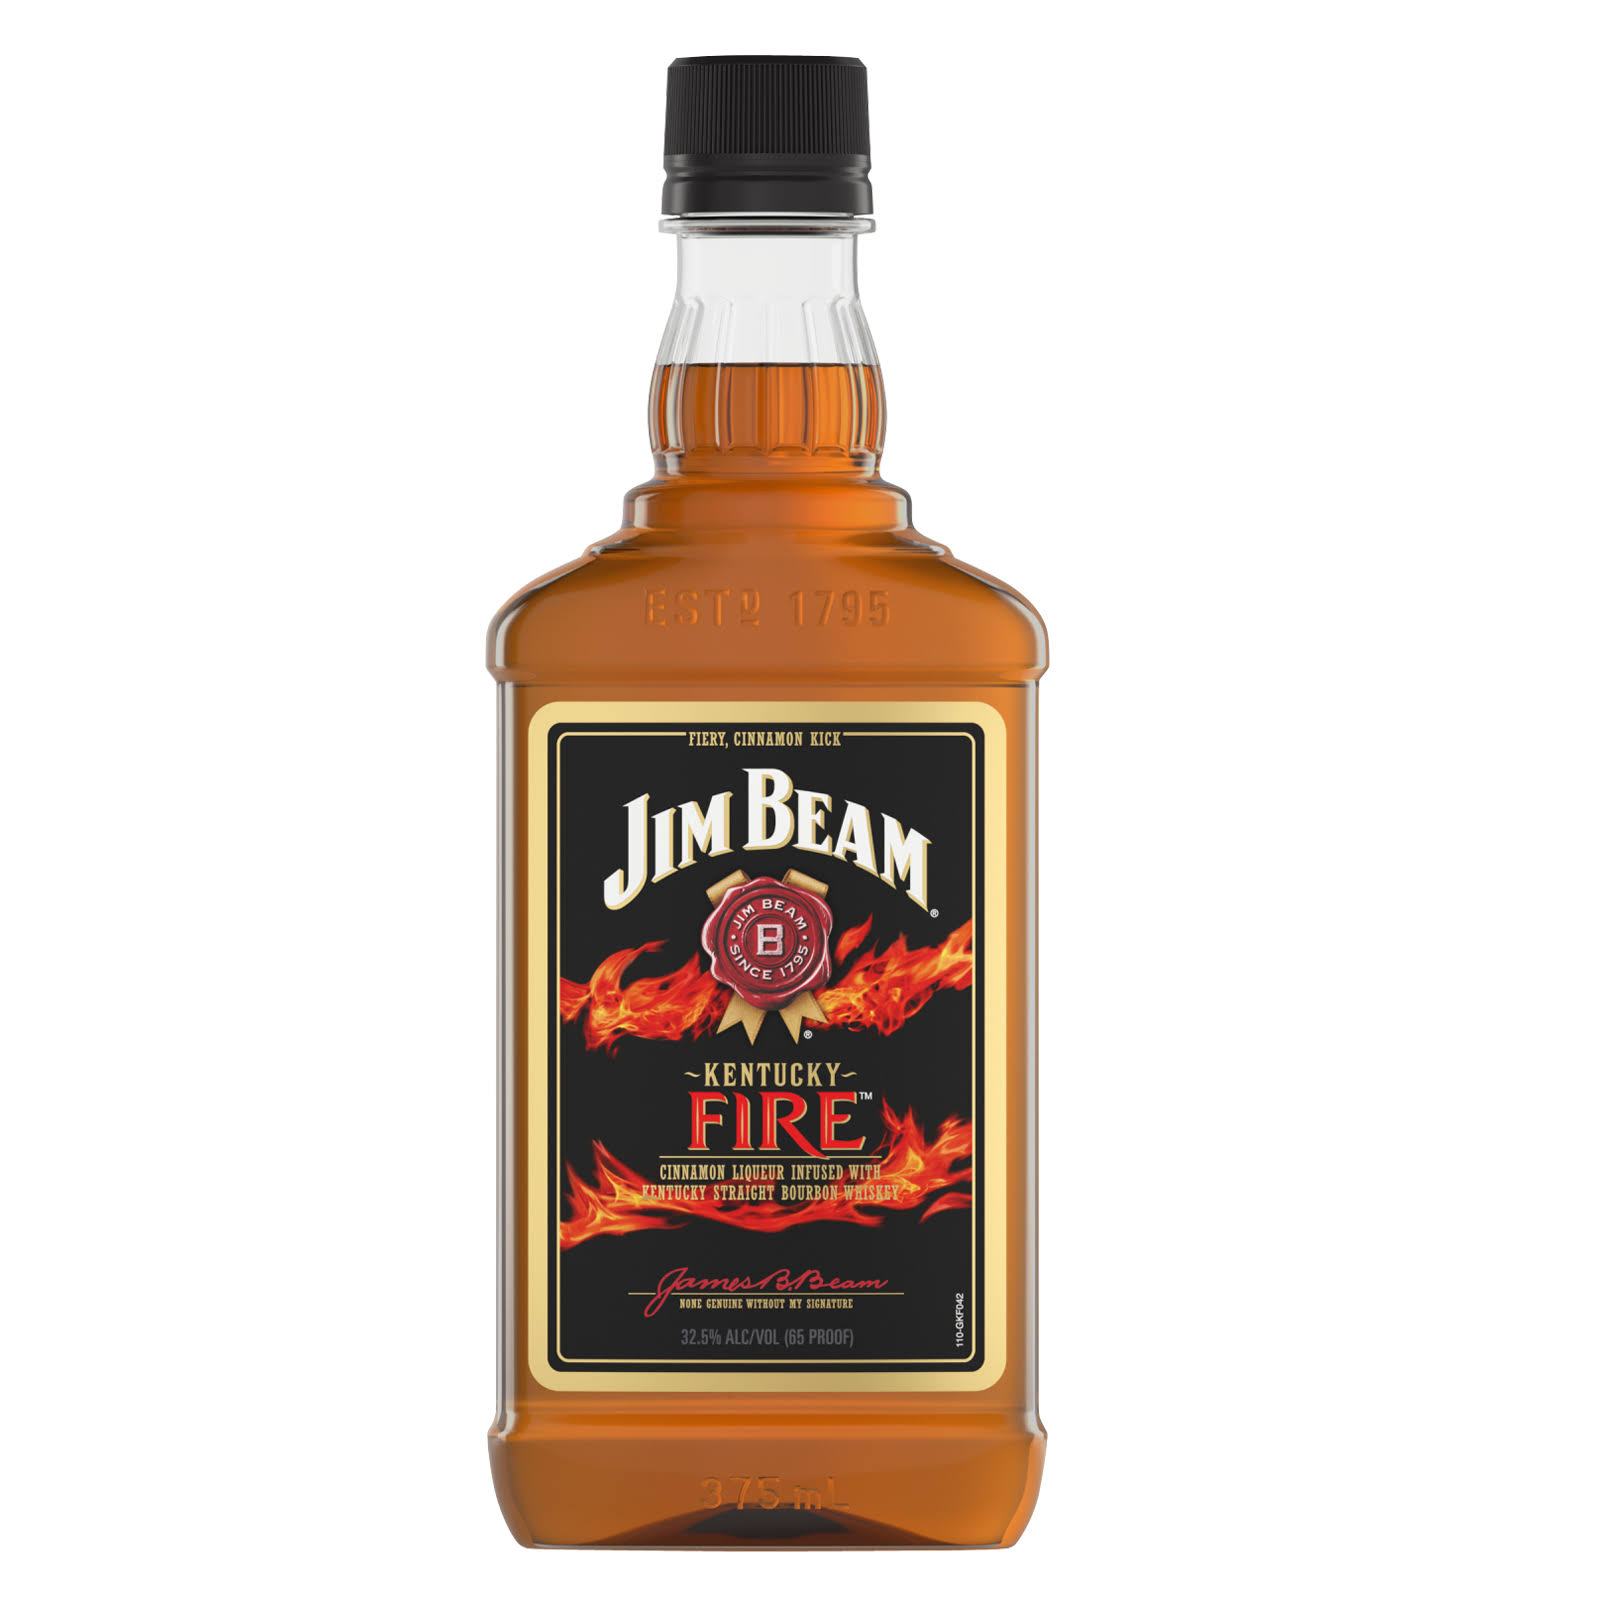 Jim Beam Kentucky Fire Bourbon Whiskey - 375.0 ml